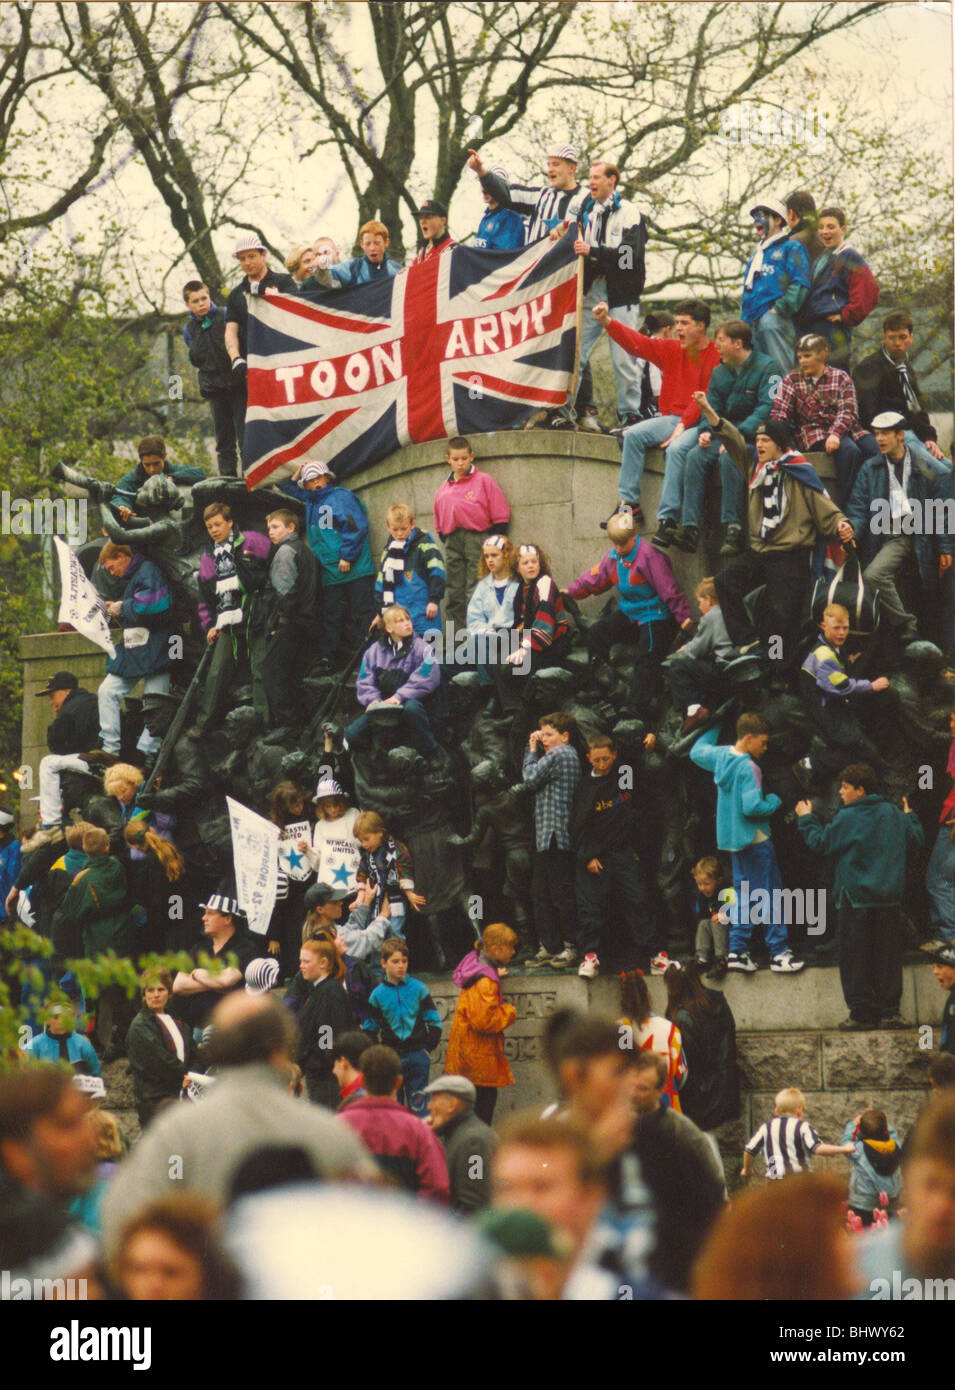 Newcastle United gewinnen das erste Liga - Spieler auf dem offenen Bus mit der Trophäe Mai 1993 - Fans entlang der Strecke Stockfoto